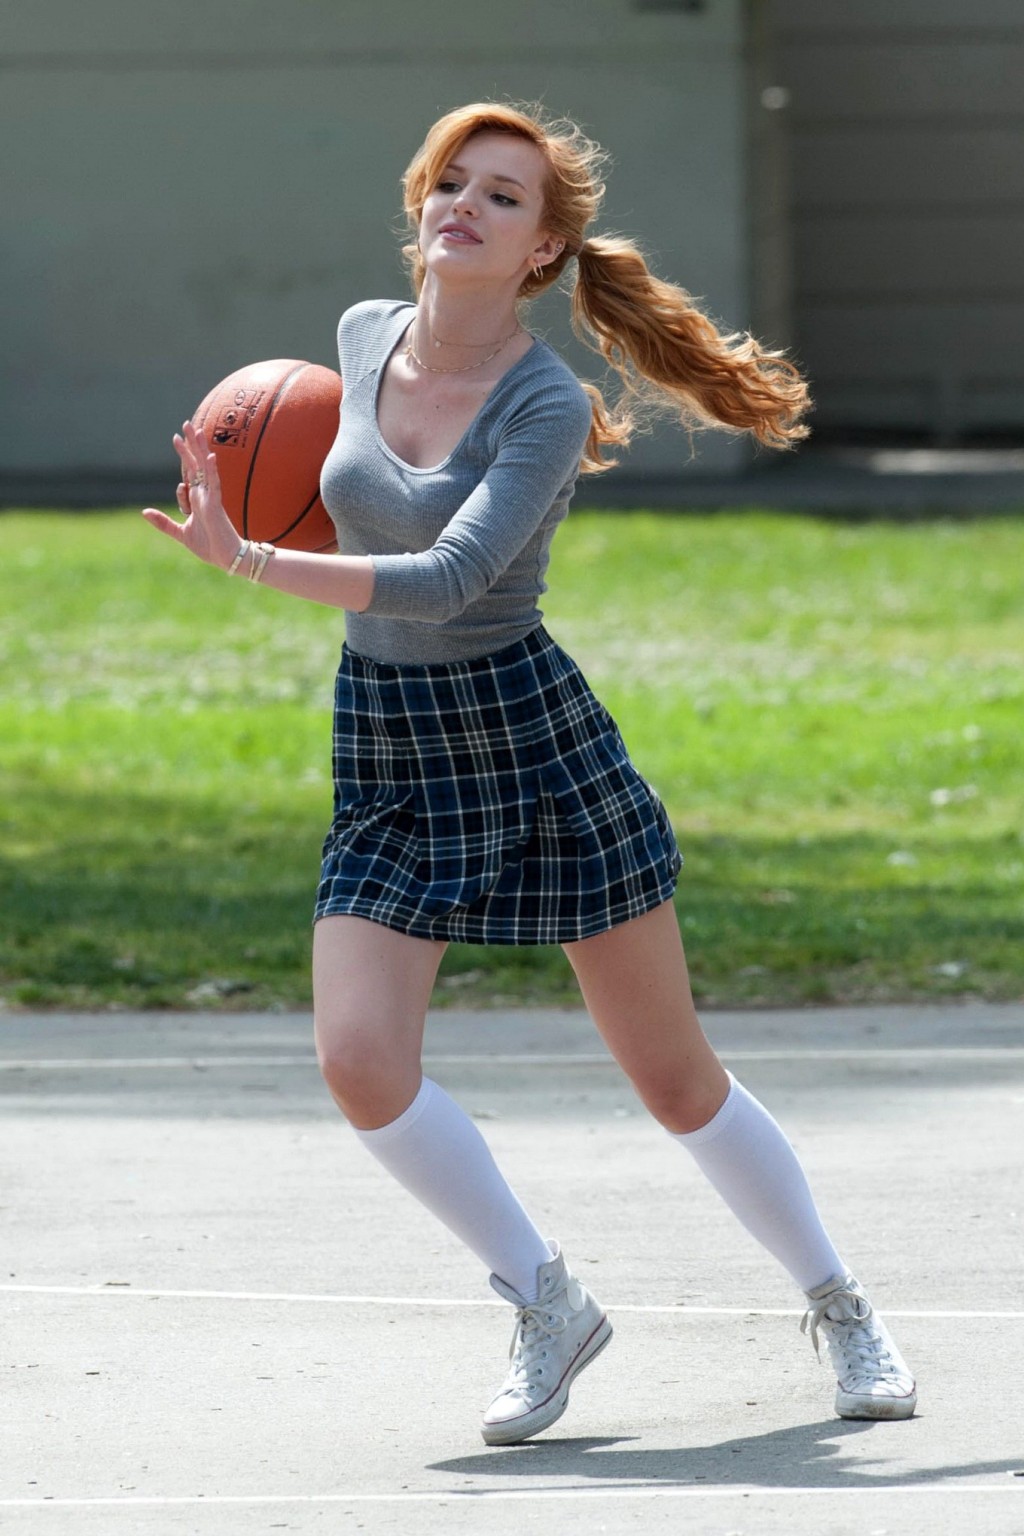 ベラ・ソーン、「Most ghos」の撮影で女子高生姿でバスケをする
 #75200783